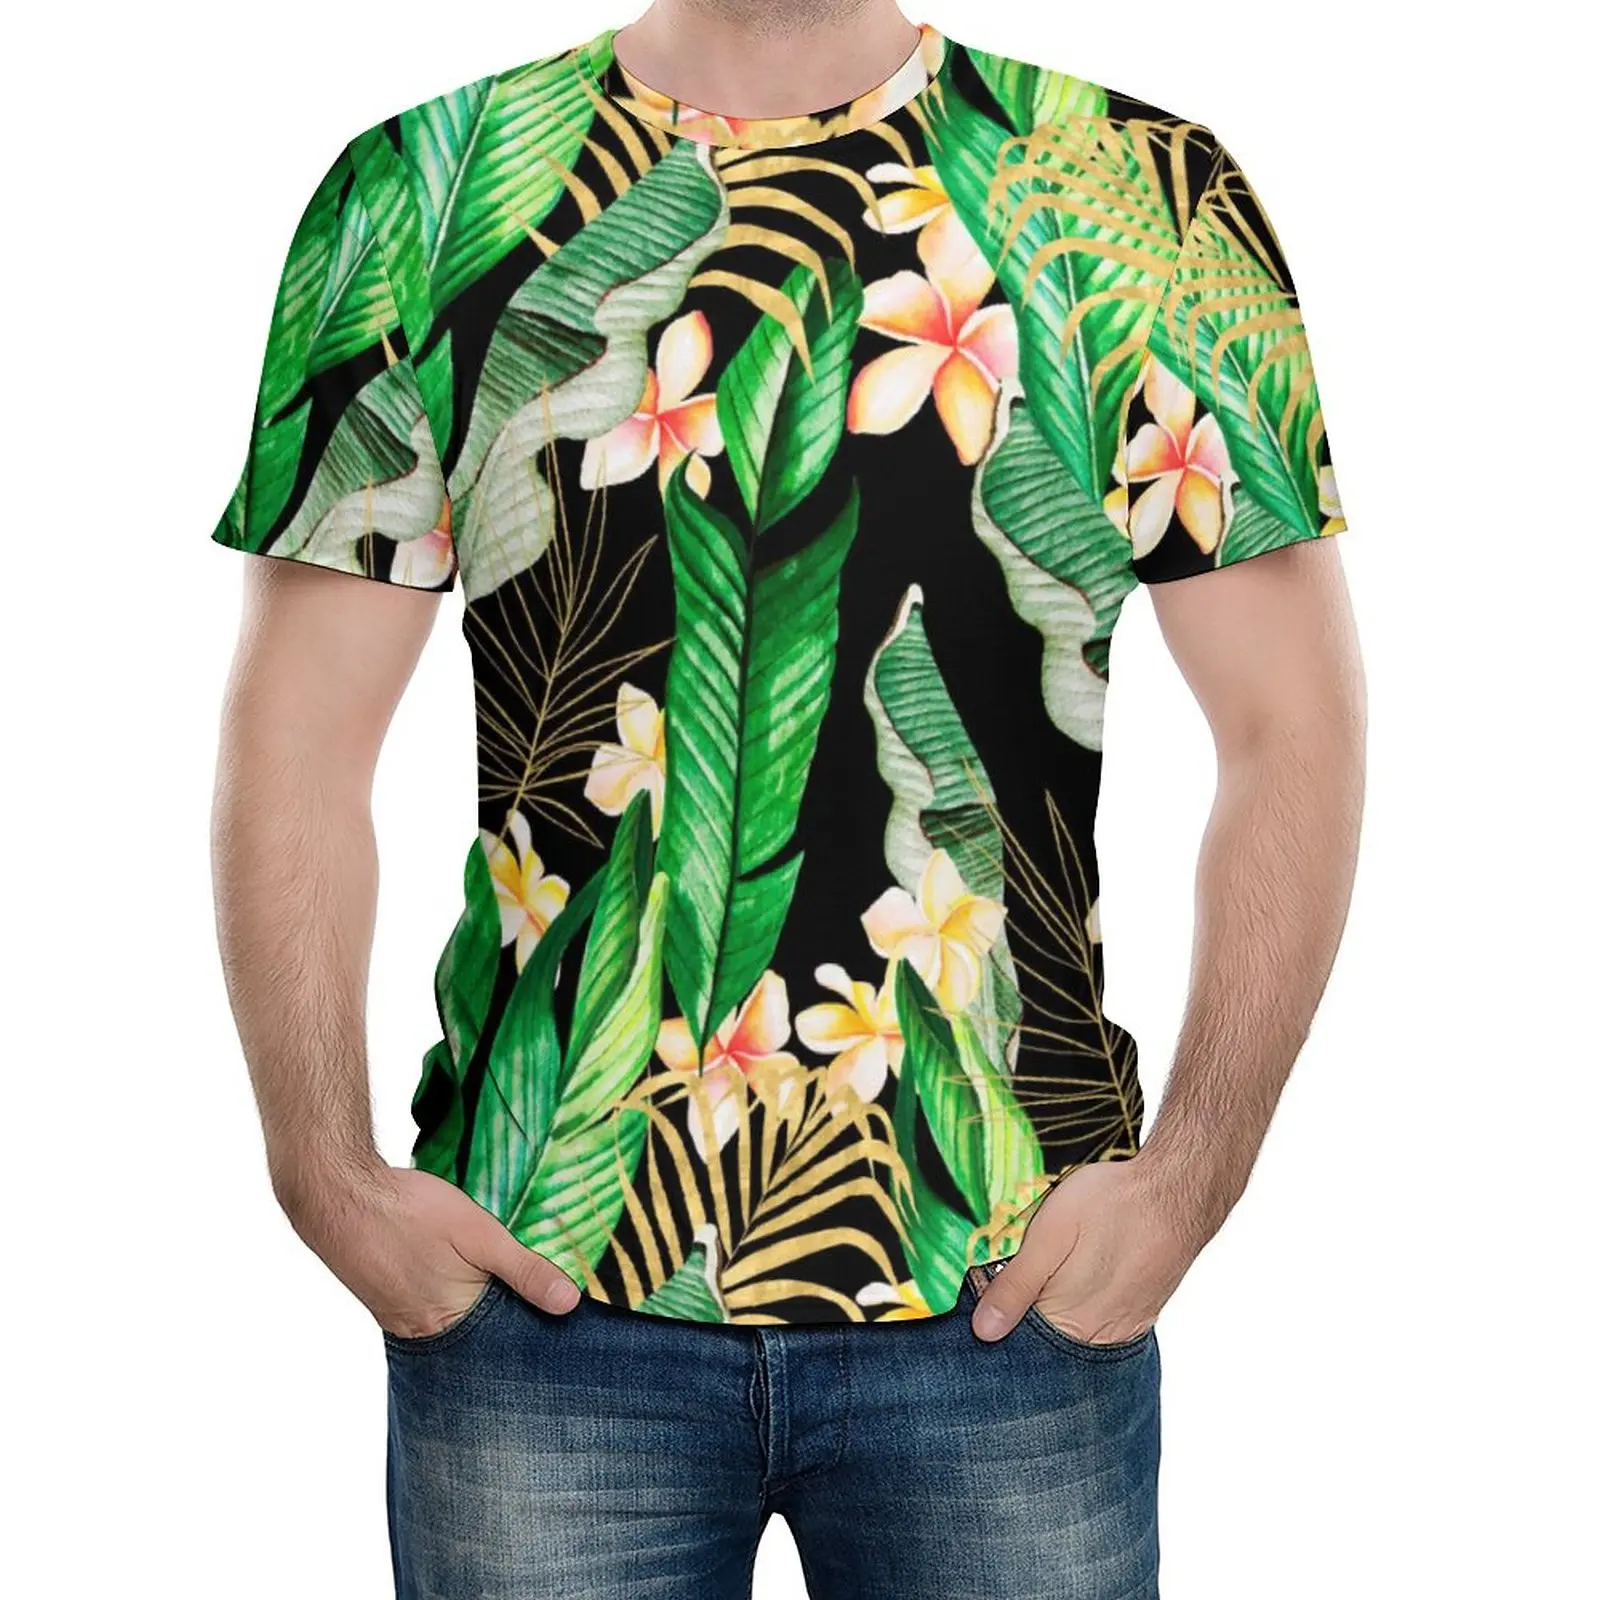 

Мужские Веселые футболки с рисунком тропического леса и зеленой ладони в стиле джунглей, летняя Необычная футболка, топы большого размера с коротким рукавом